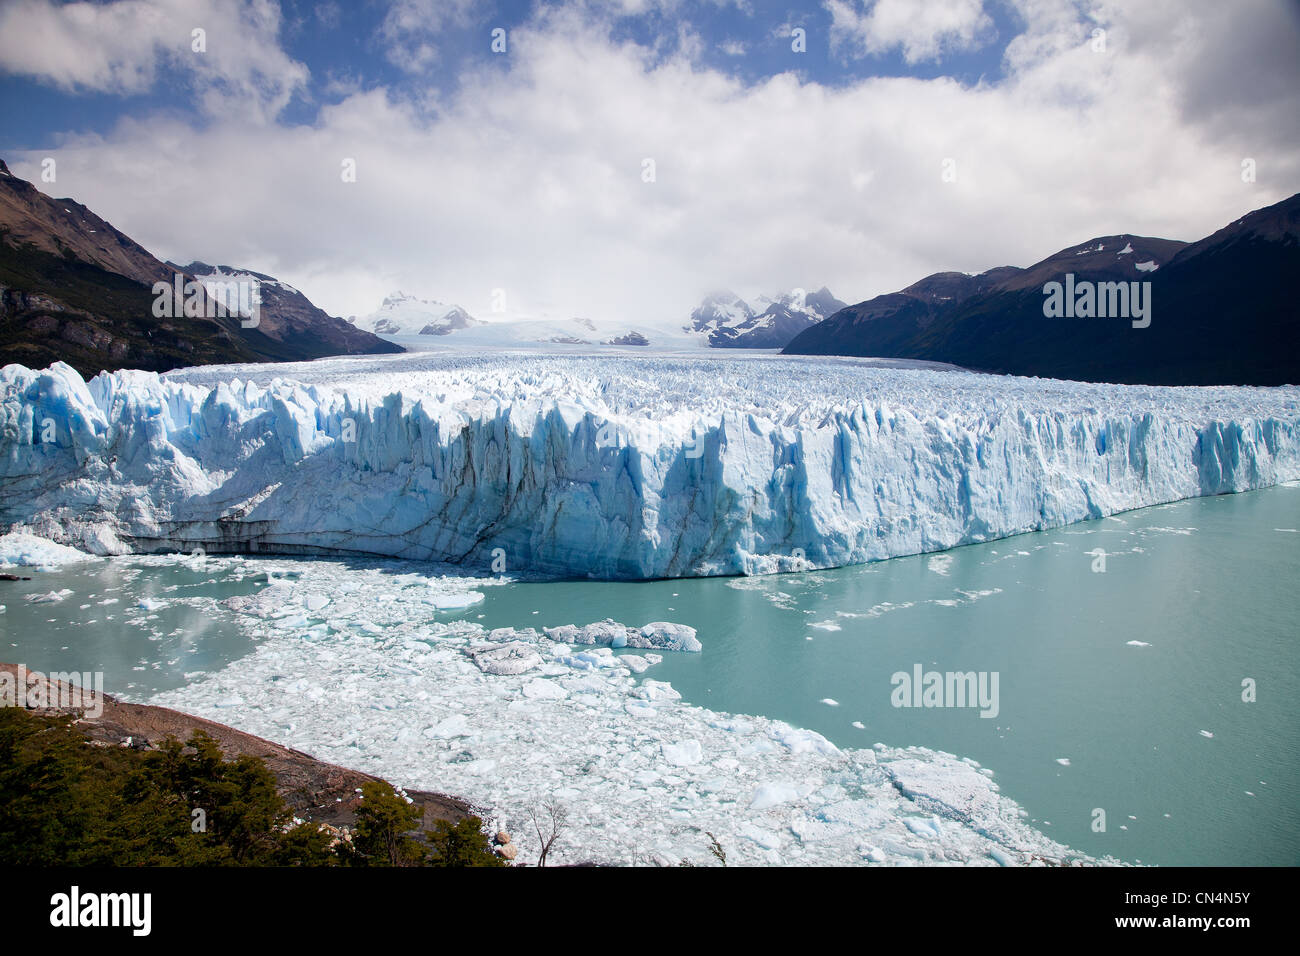 Argentina, Patagonia, provincia de Santa Cruz, el Parque Nacional Los Glaciares, catalogada como Patrimonio de la Humanidad por la UNESCO, El Calafate, Perito Foto de stock